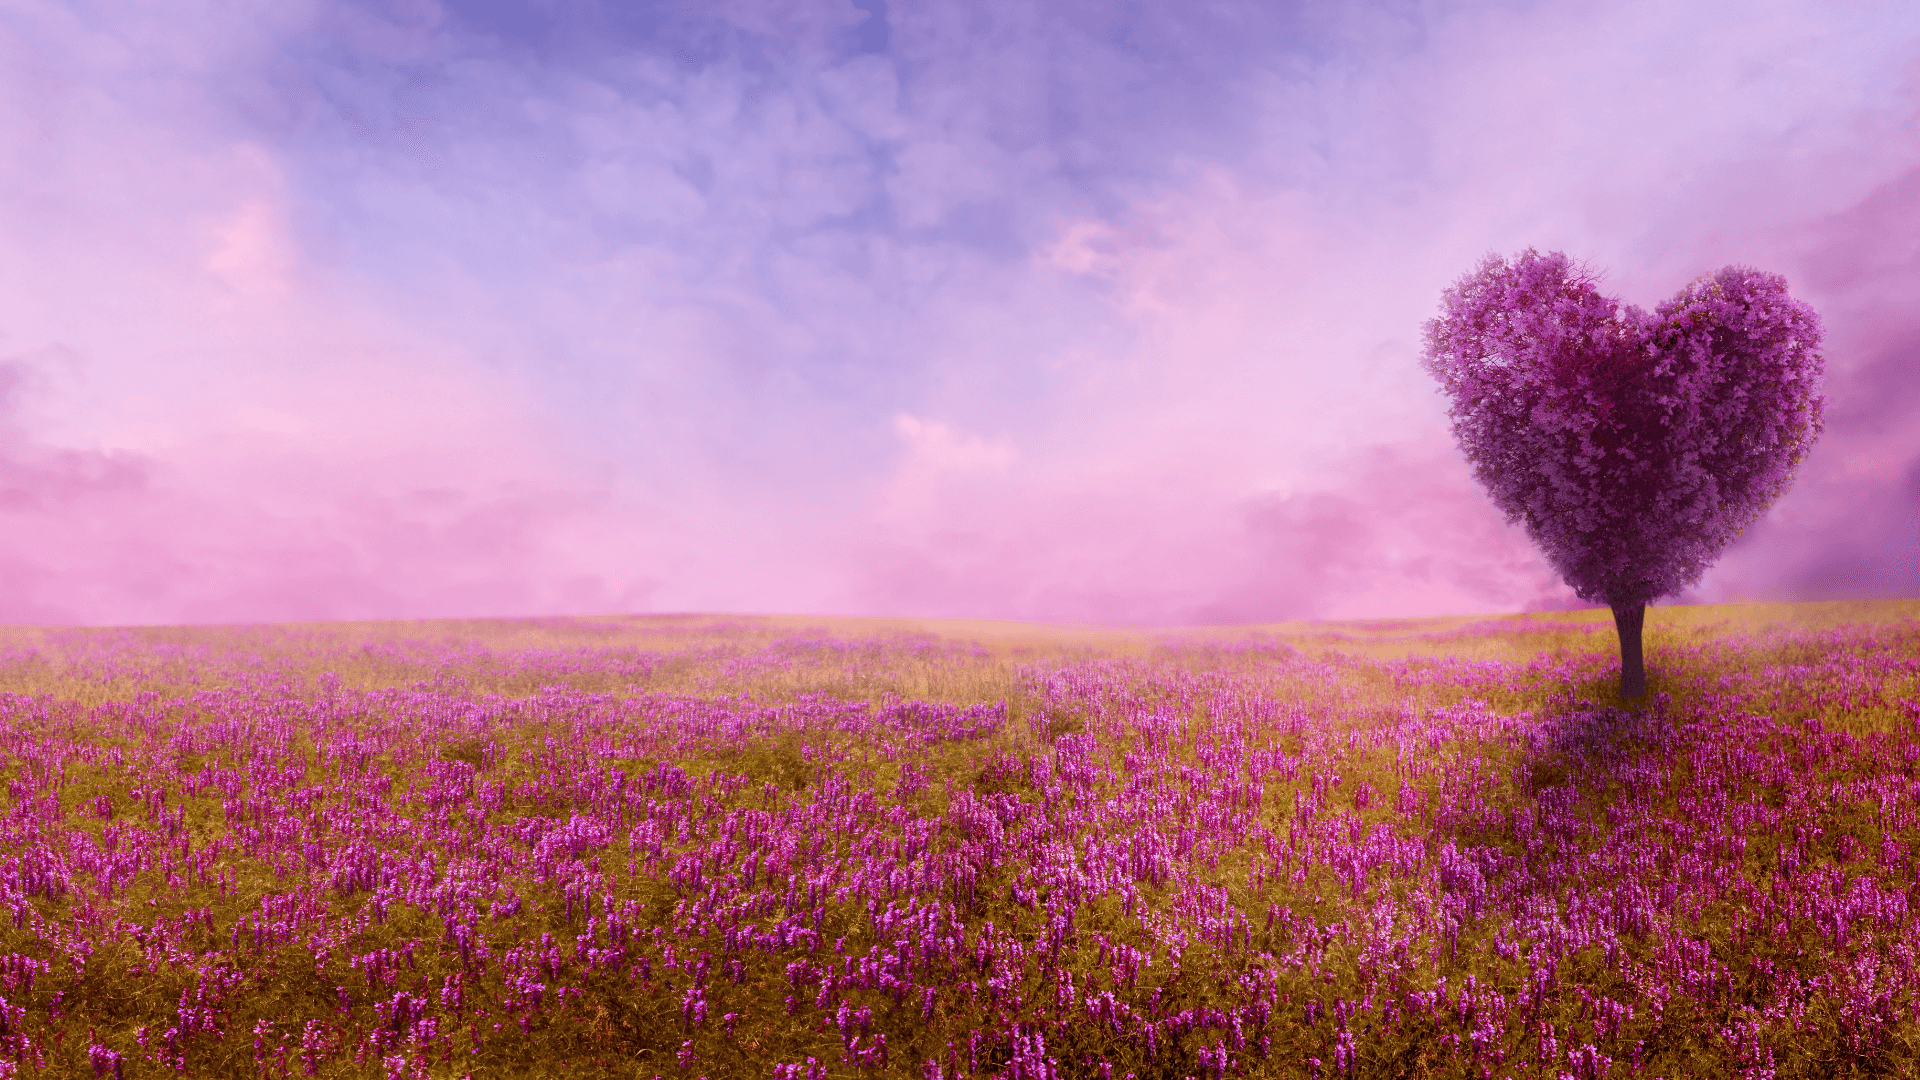 Giant tree in heart shape in the field of flowers in purple tint.